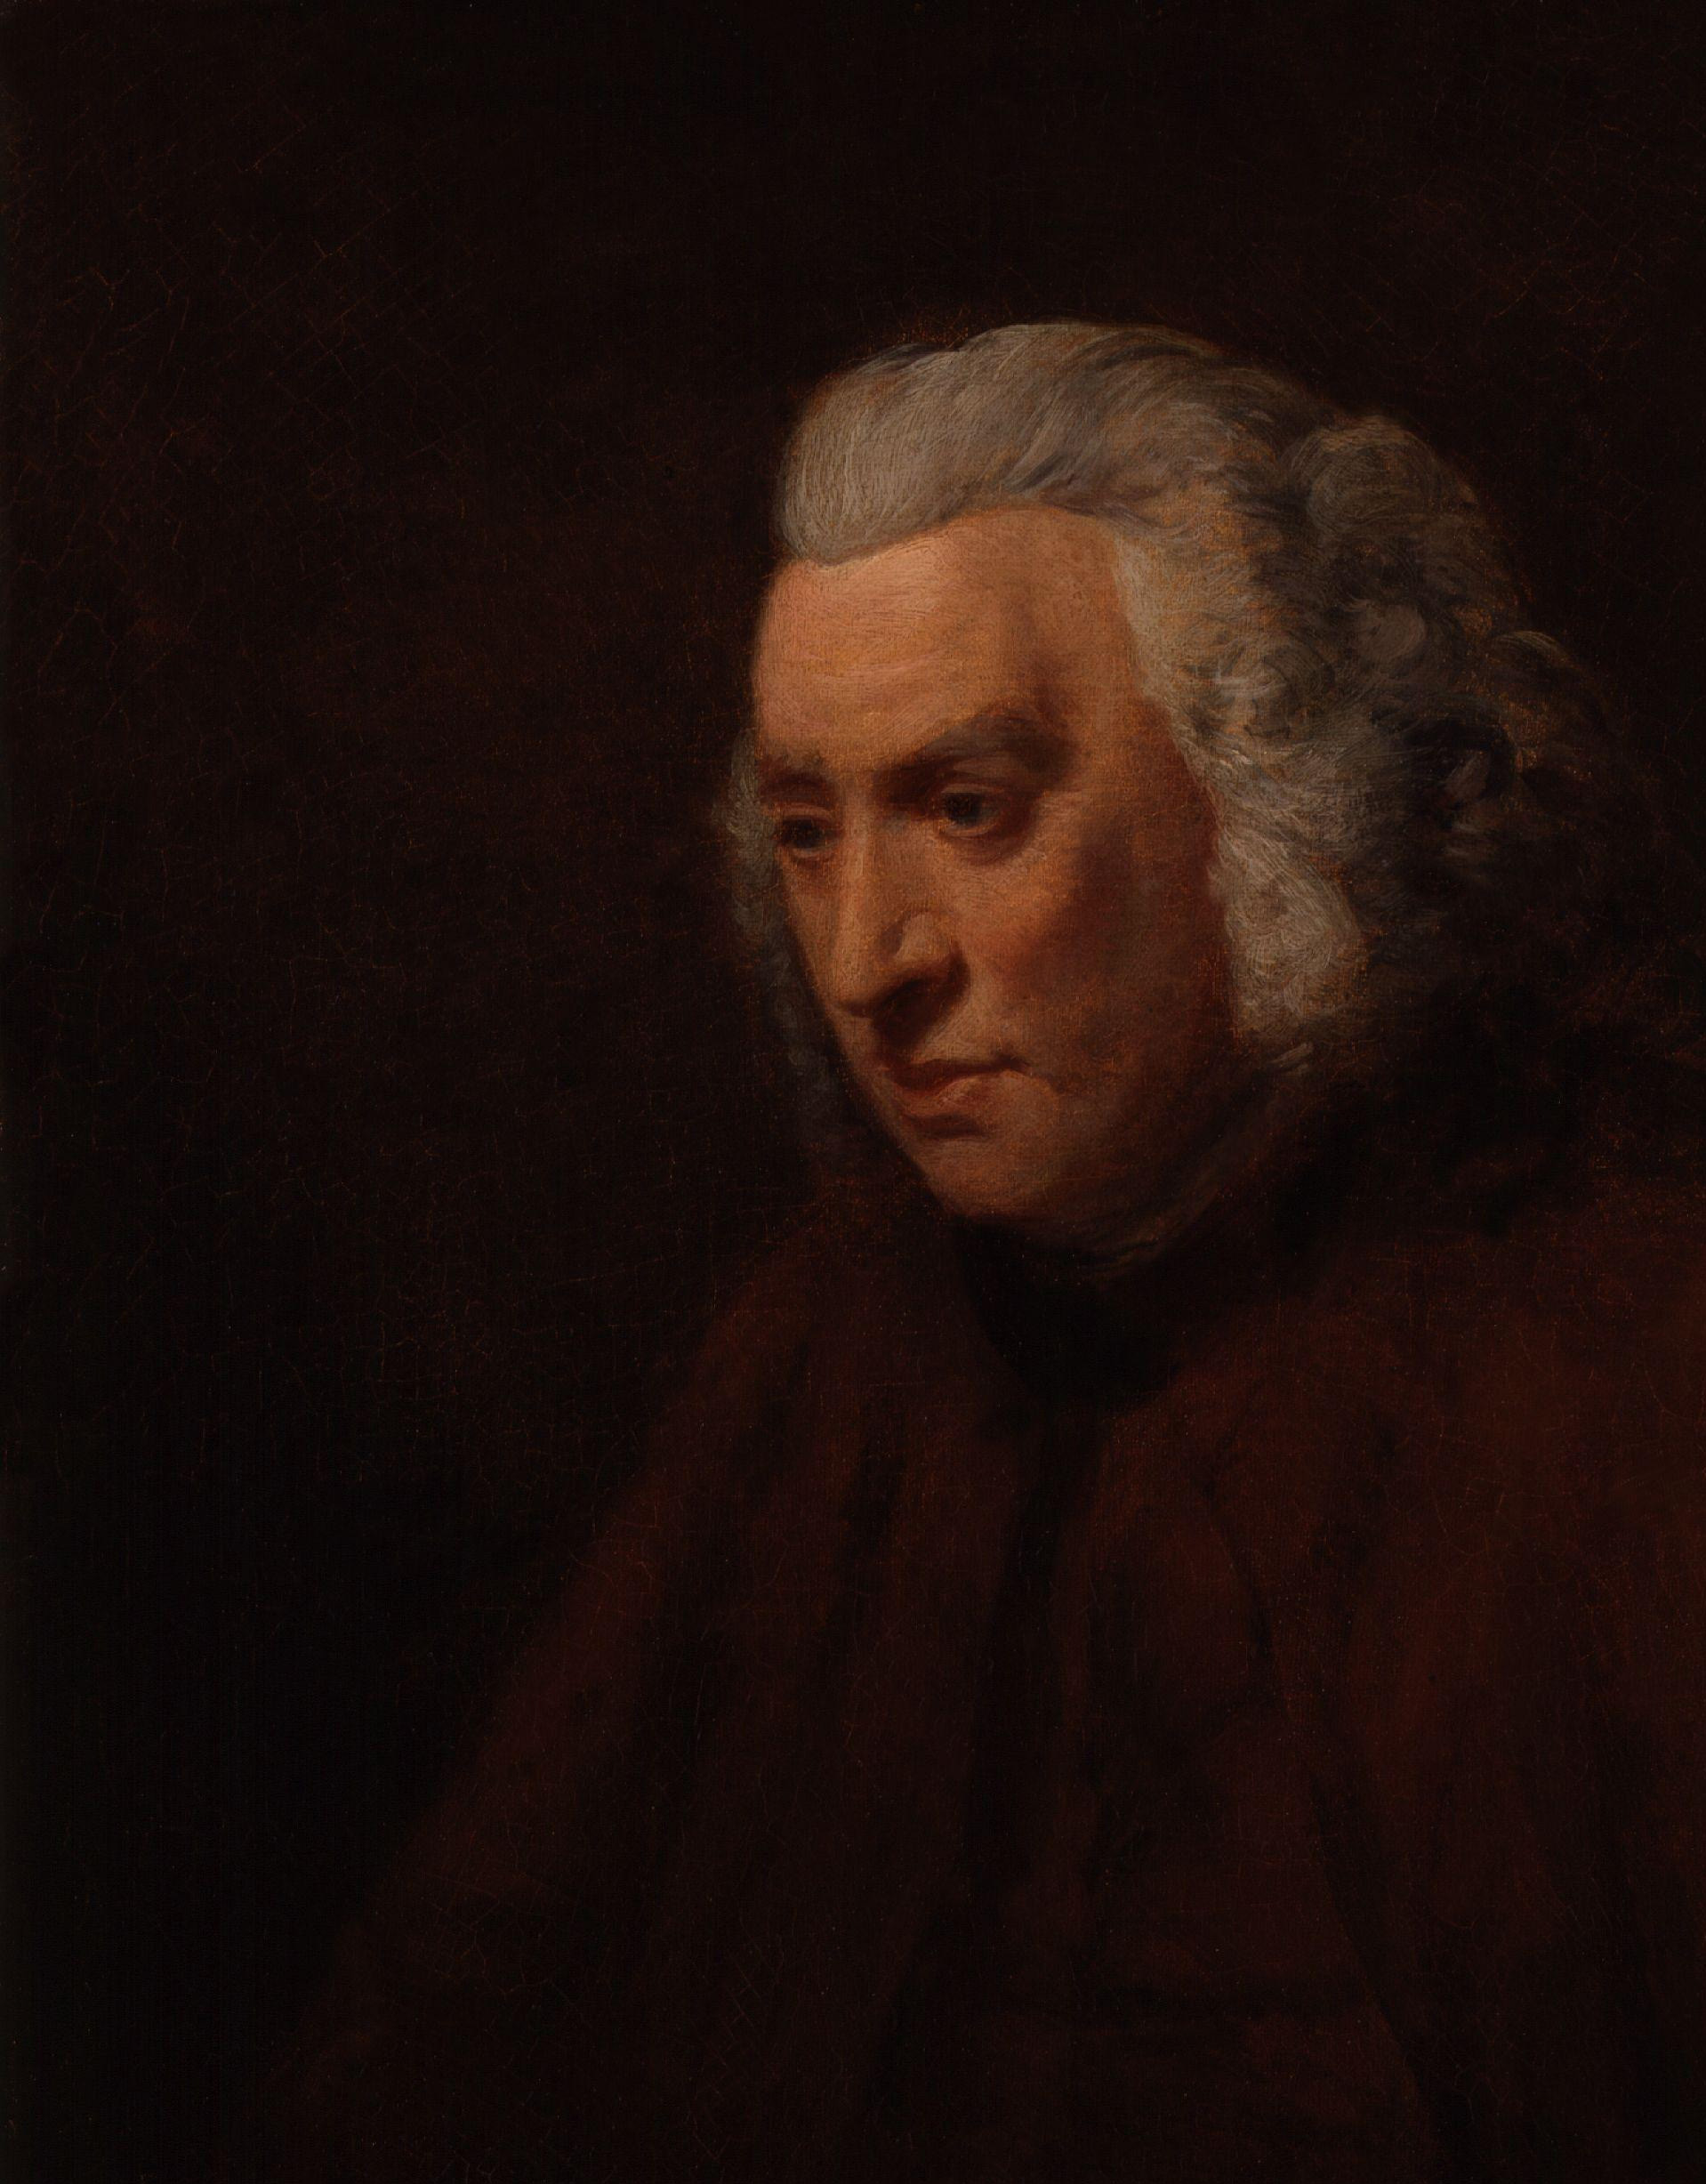 Samuel Johnson by John Opie copy crop 